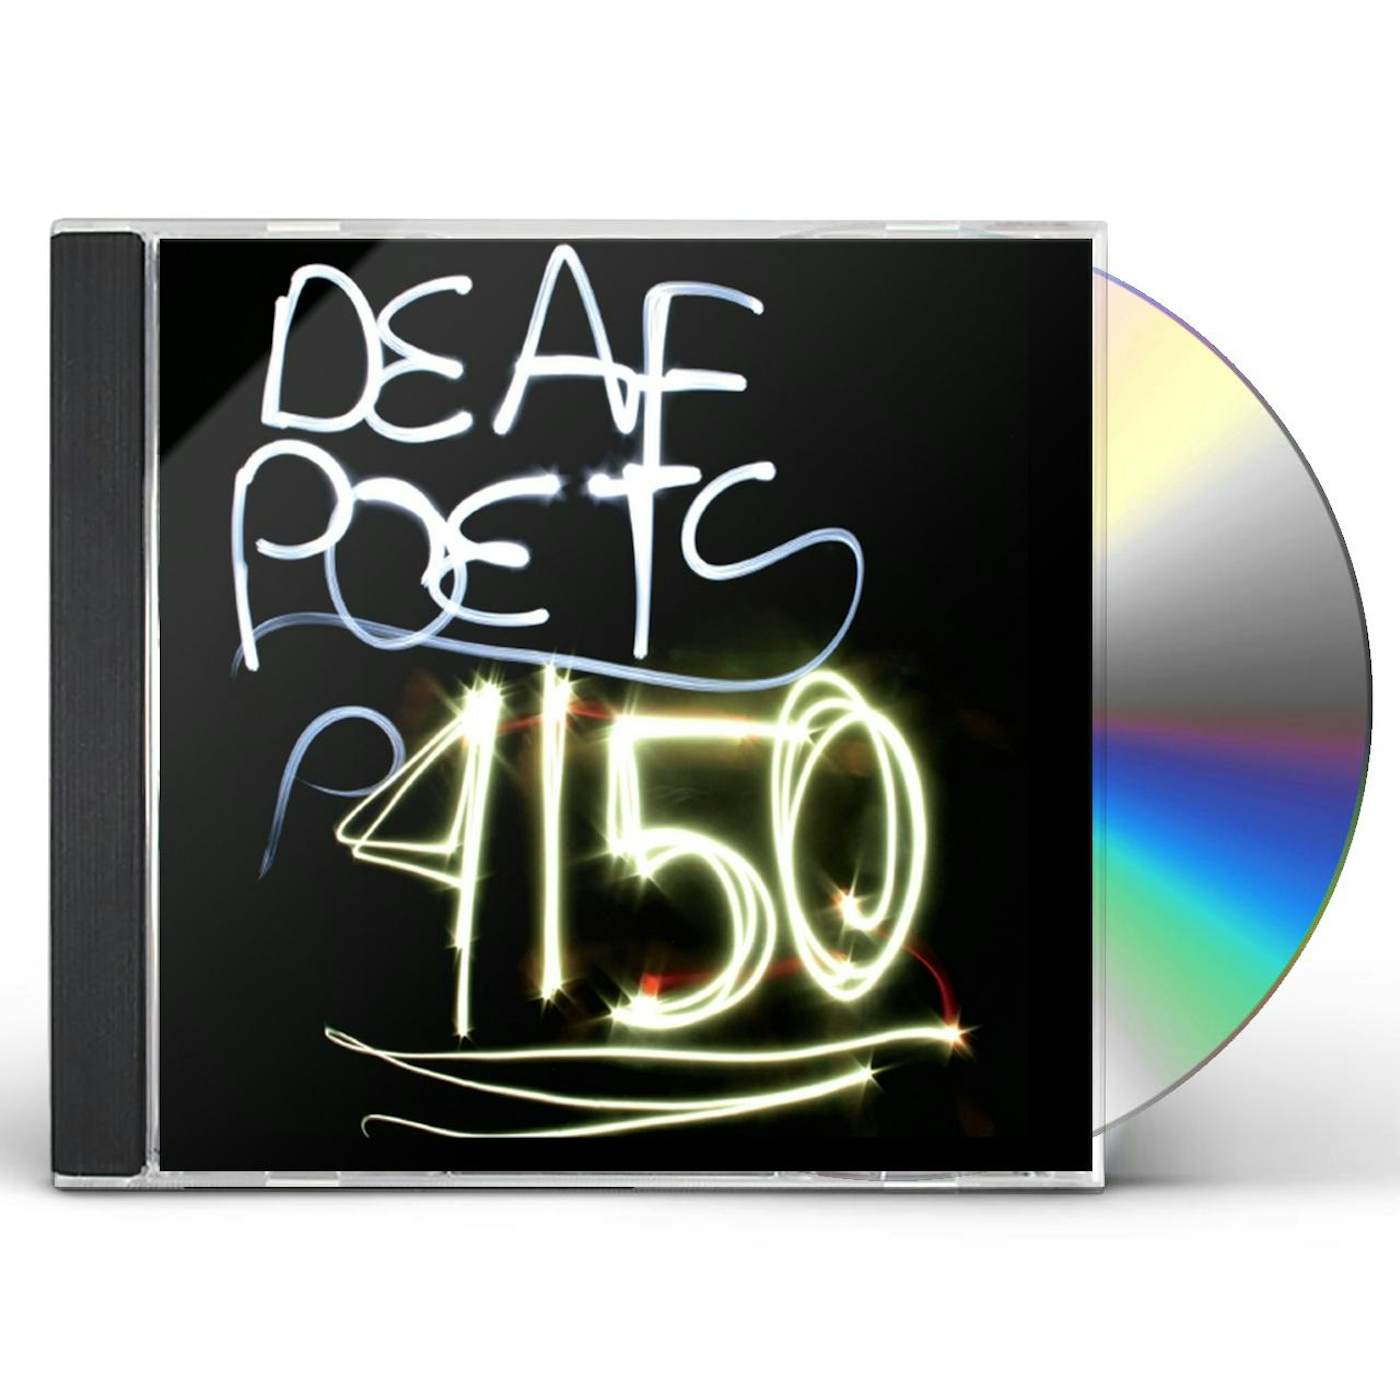 Deaf Poets 4150 CD